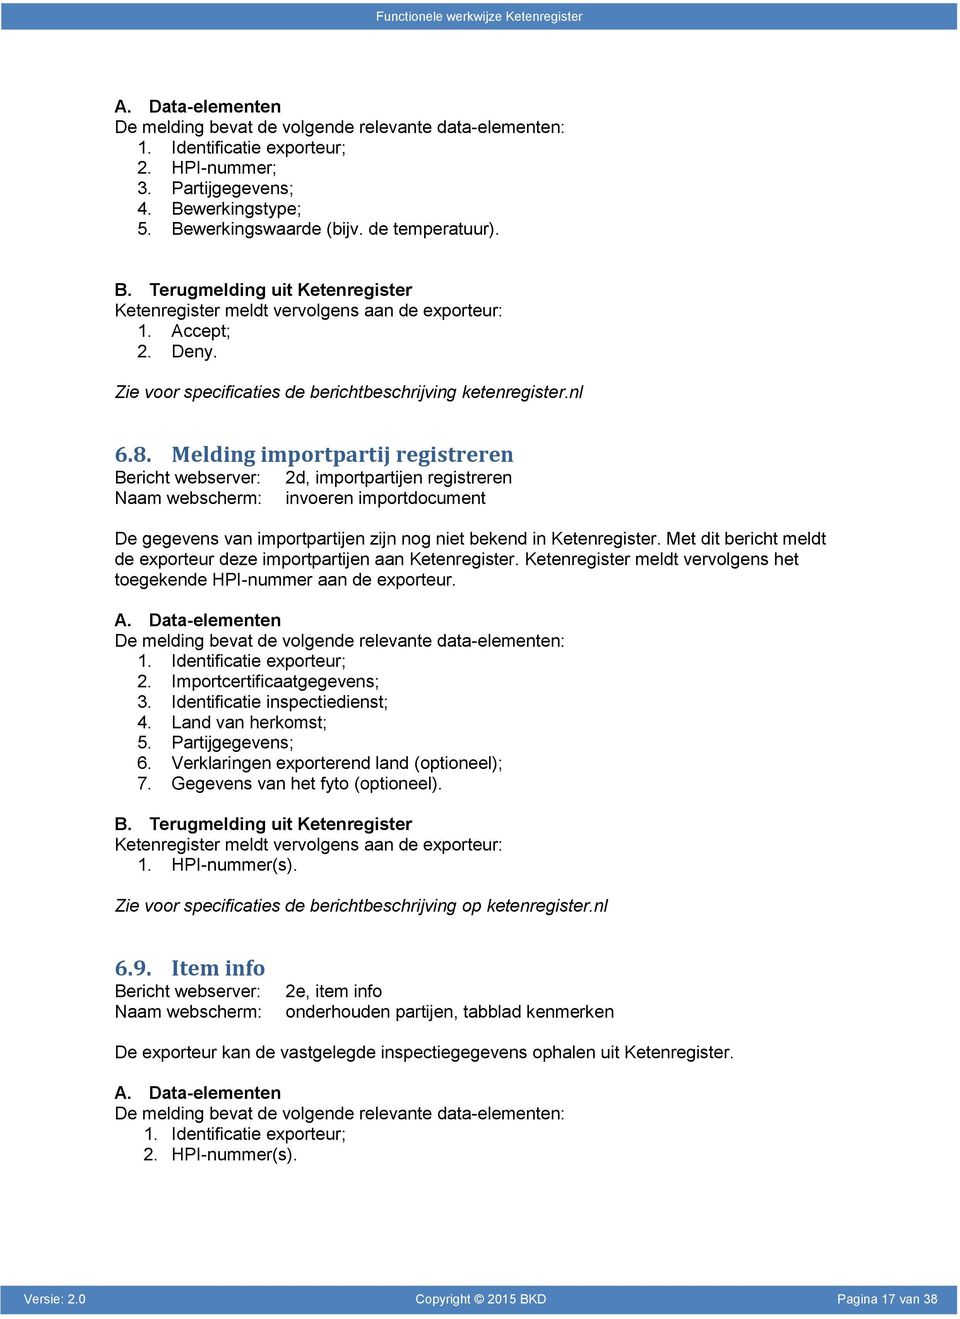 Zie voor specificaties de berichtbeschrijving ketenregister.nl 6.8.